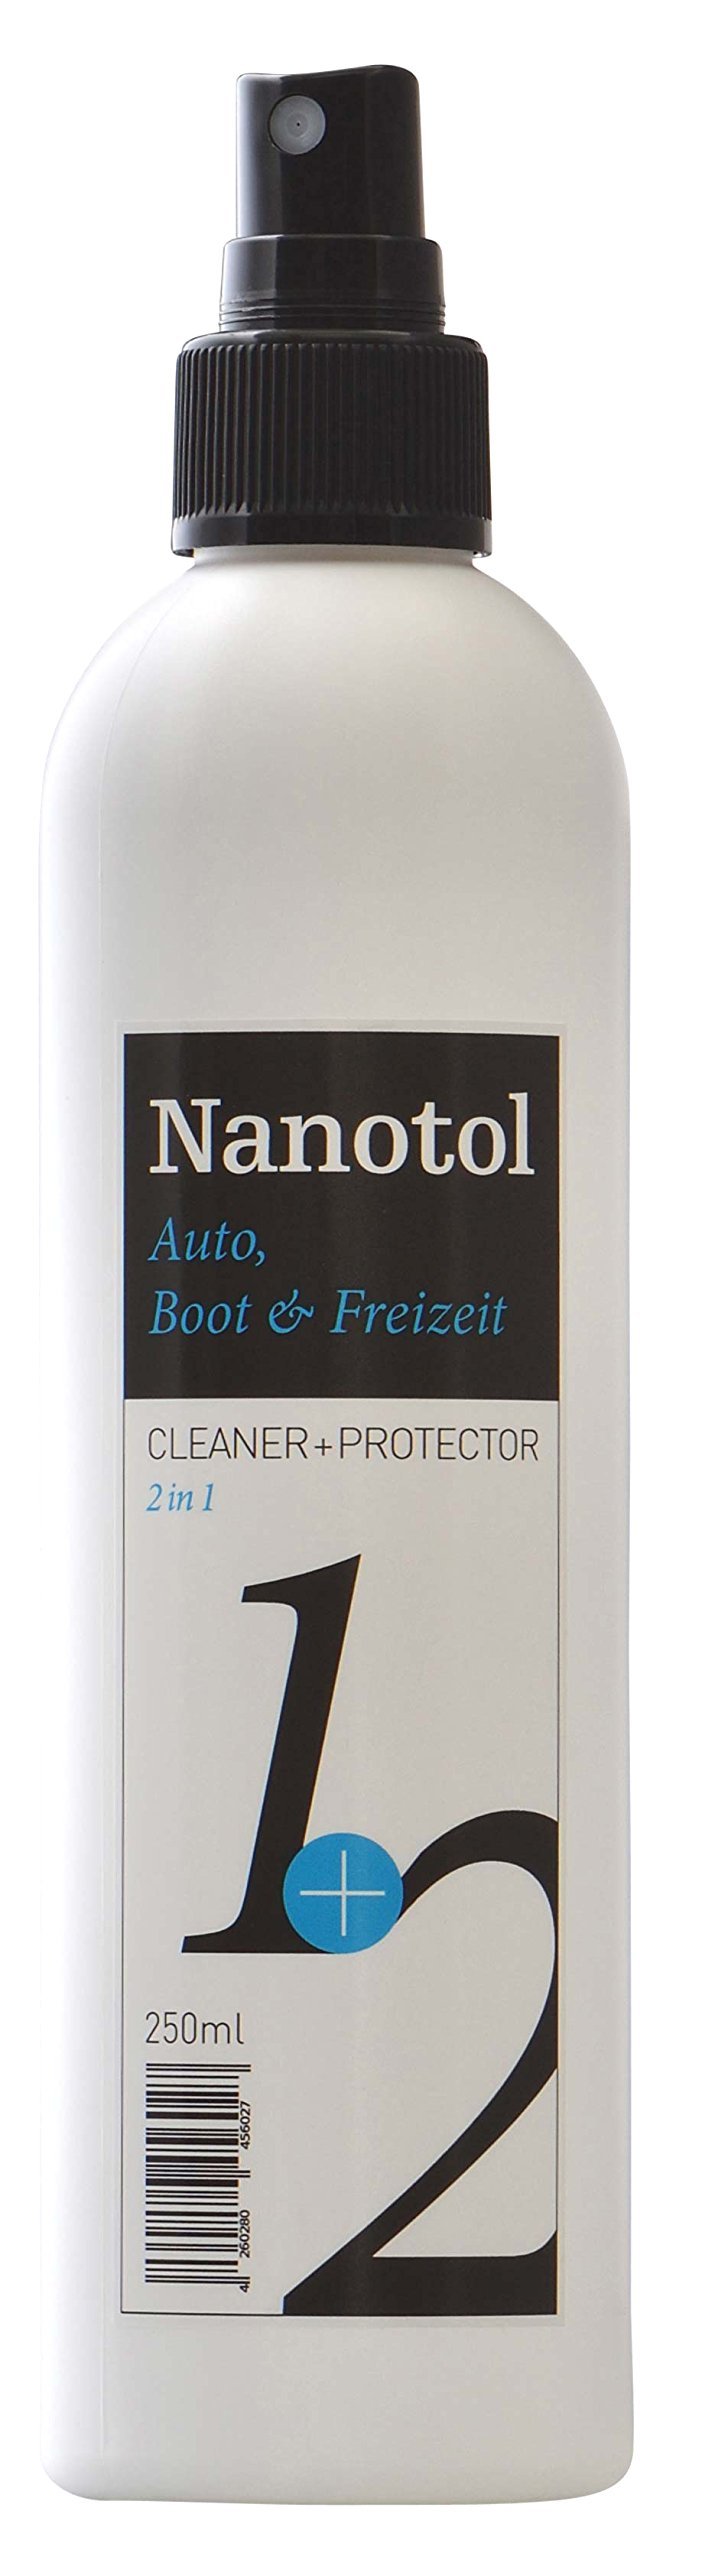 Nanotol Regenabweiser, Scheibenversiegelung Auto, Boot & Freizeit 2in1 Cleaner und Protector = Reinigung und Nanoversiegelung (250ml) von Nanotol